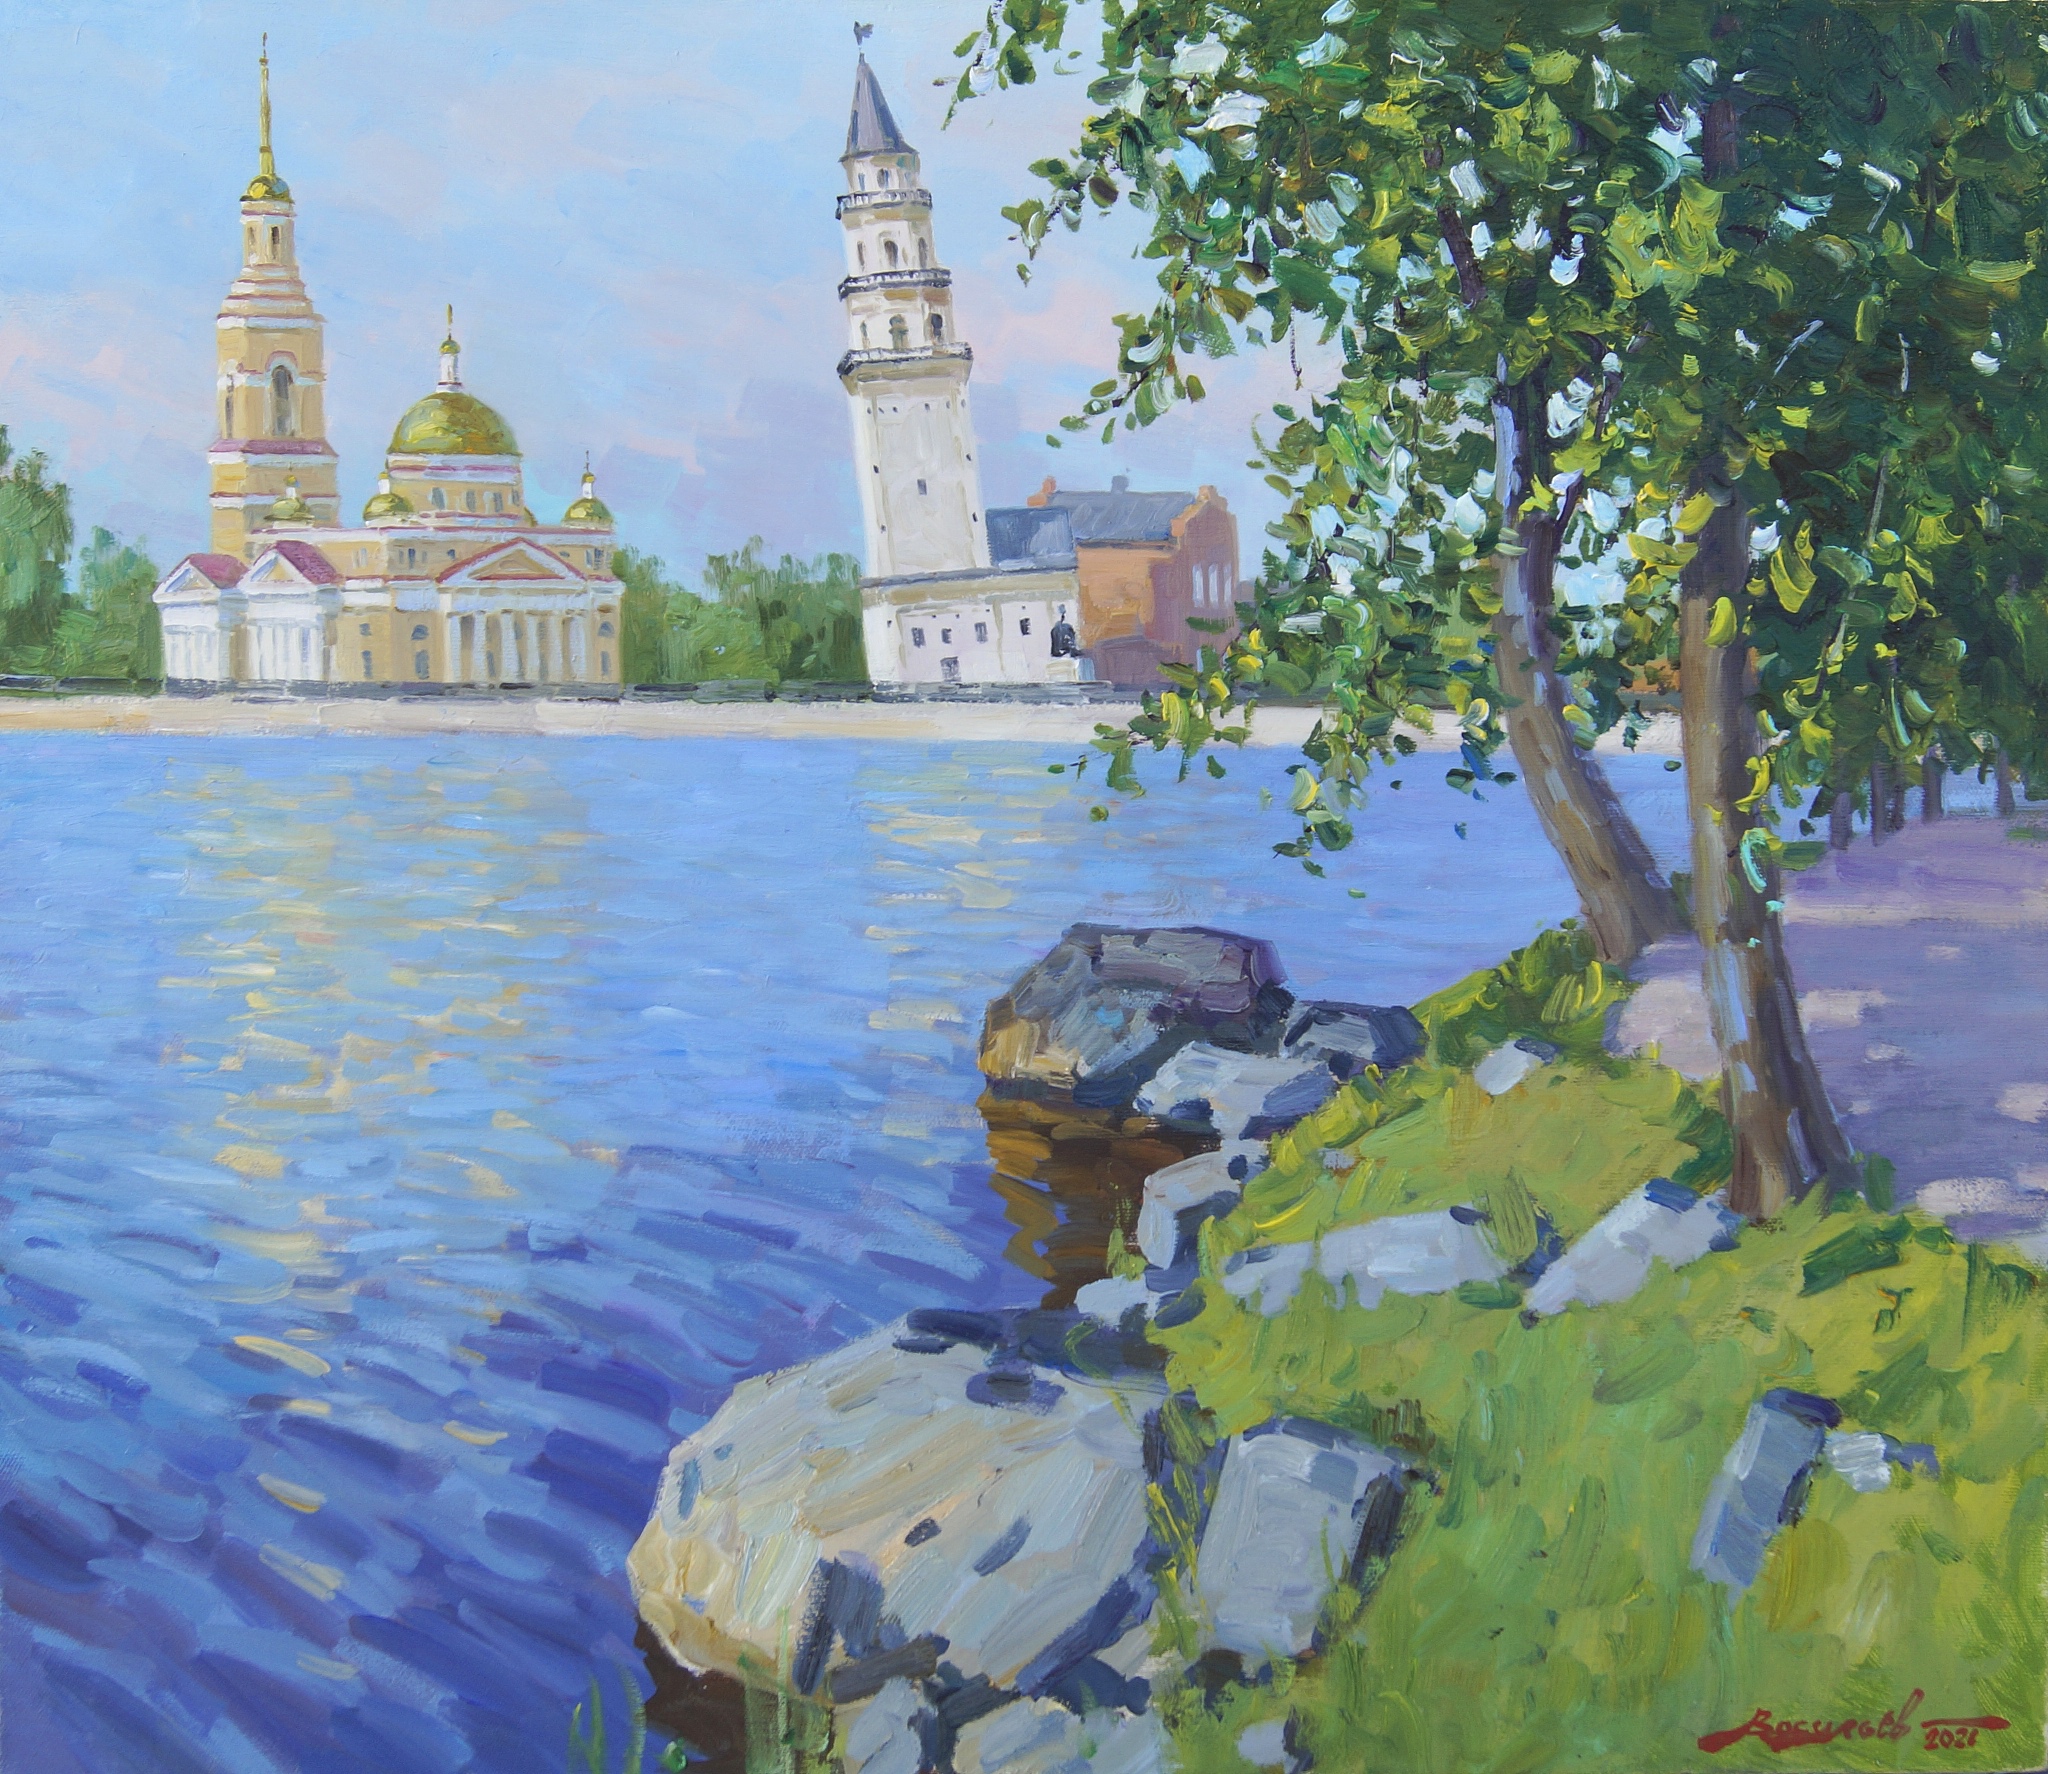 The Summer Day in Nevyansk - 1, Dmitry Vasiliev, Buy the painting Oil